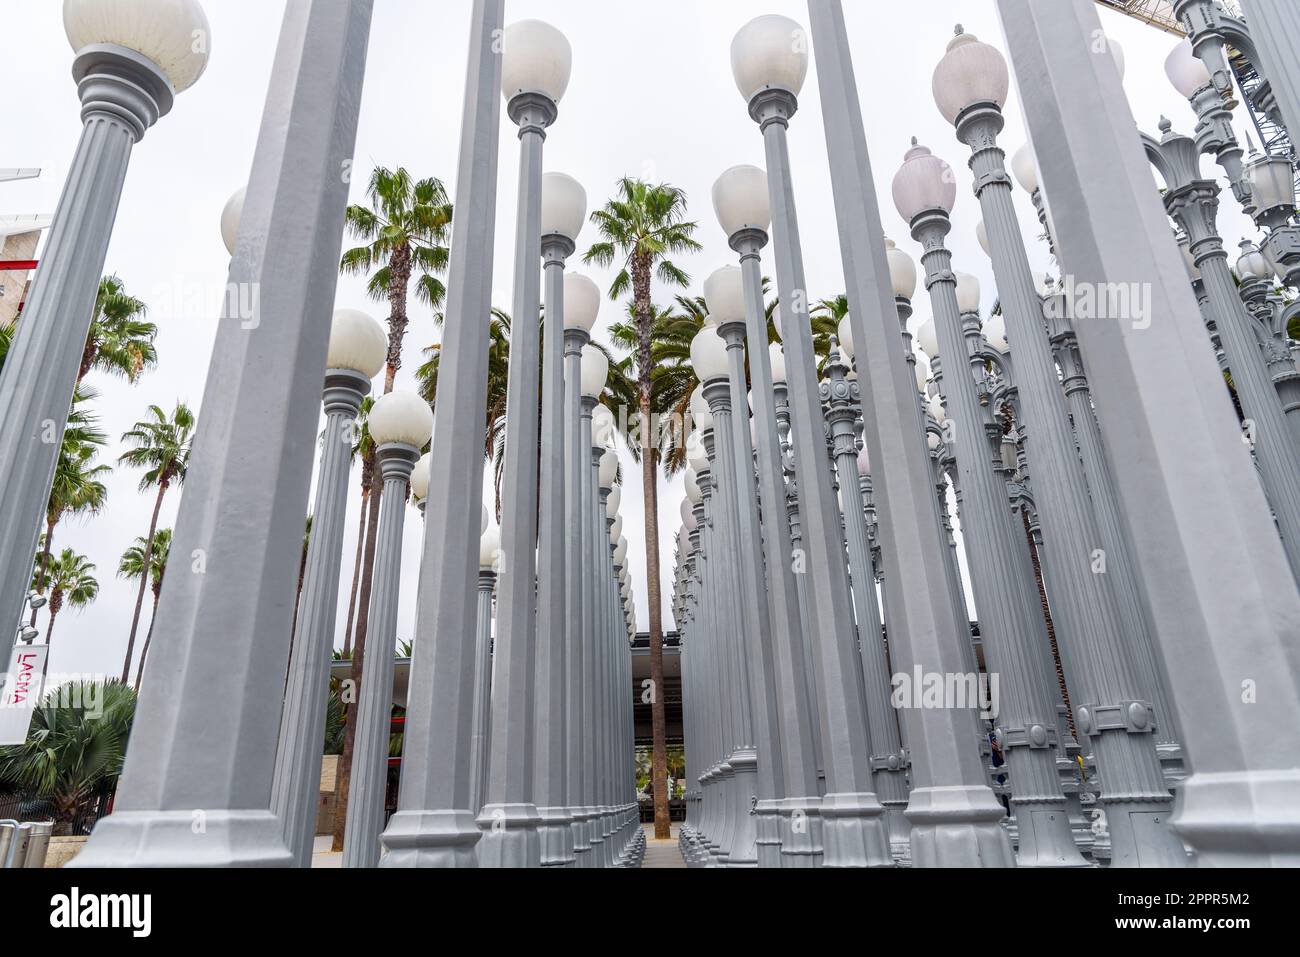 Los Angeles, CA - 14 ottobre 2022: Urban Light, un'arte pubblica progettata da Chris Burden e presentata nel 2008, accanto al Los Angeles County Museum of Foto Stock